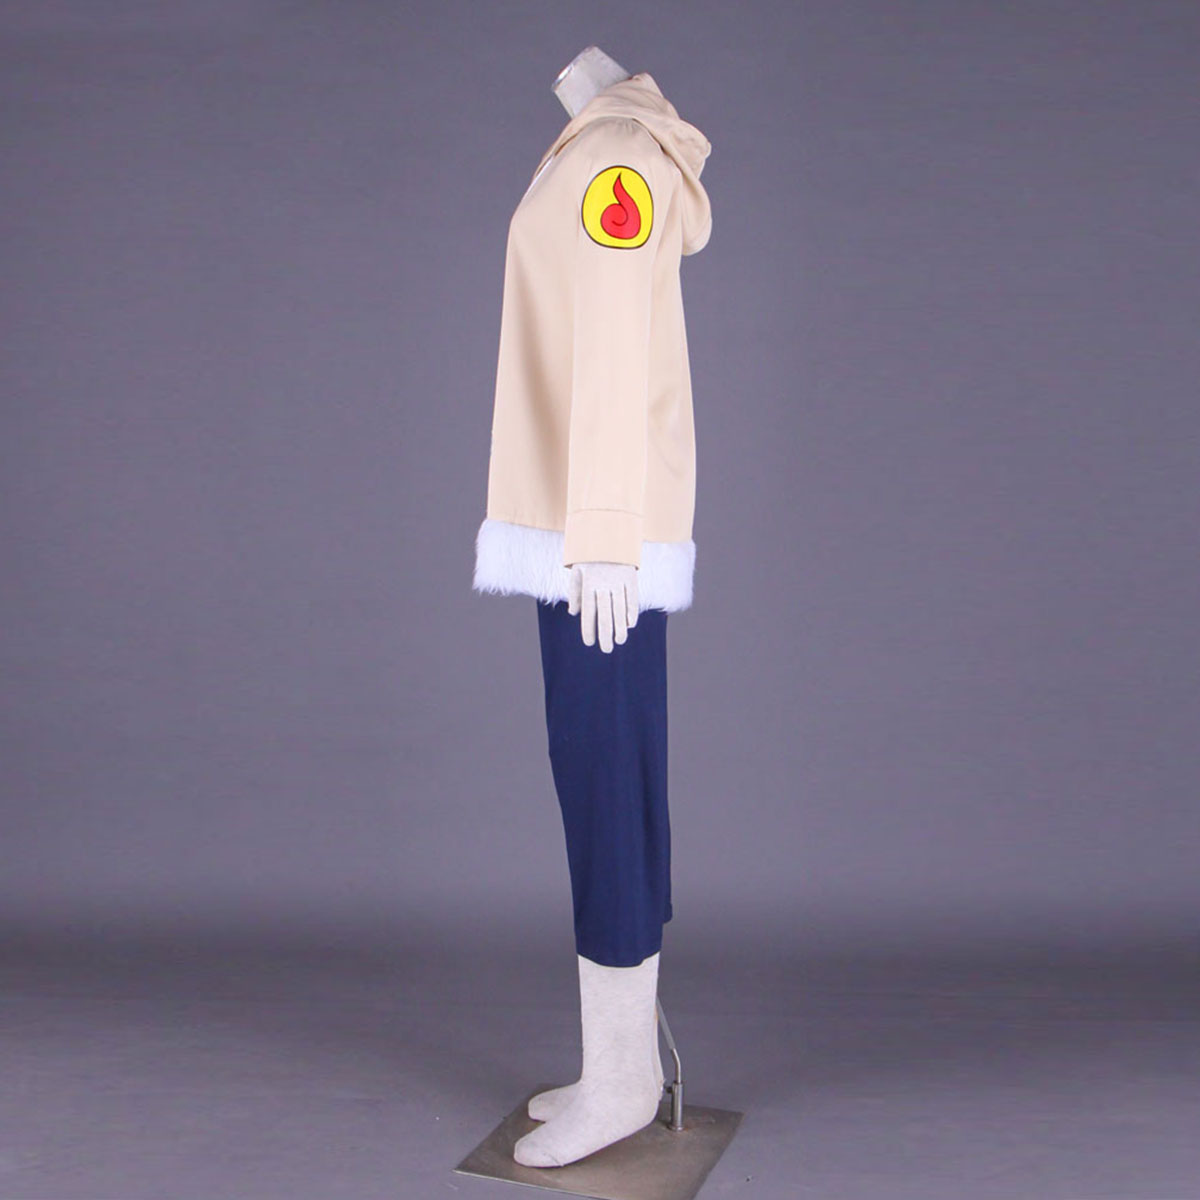 Naruto Hinata Hyuga 1 Anime Cosplay Costumes Outfit